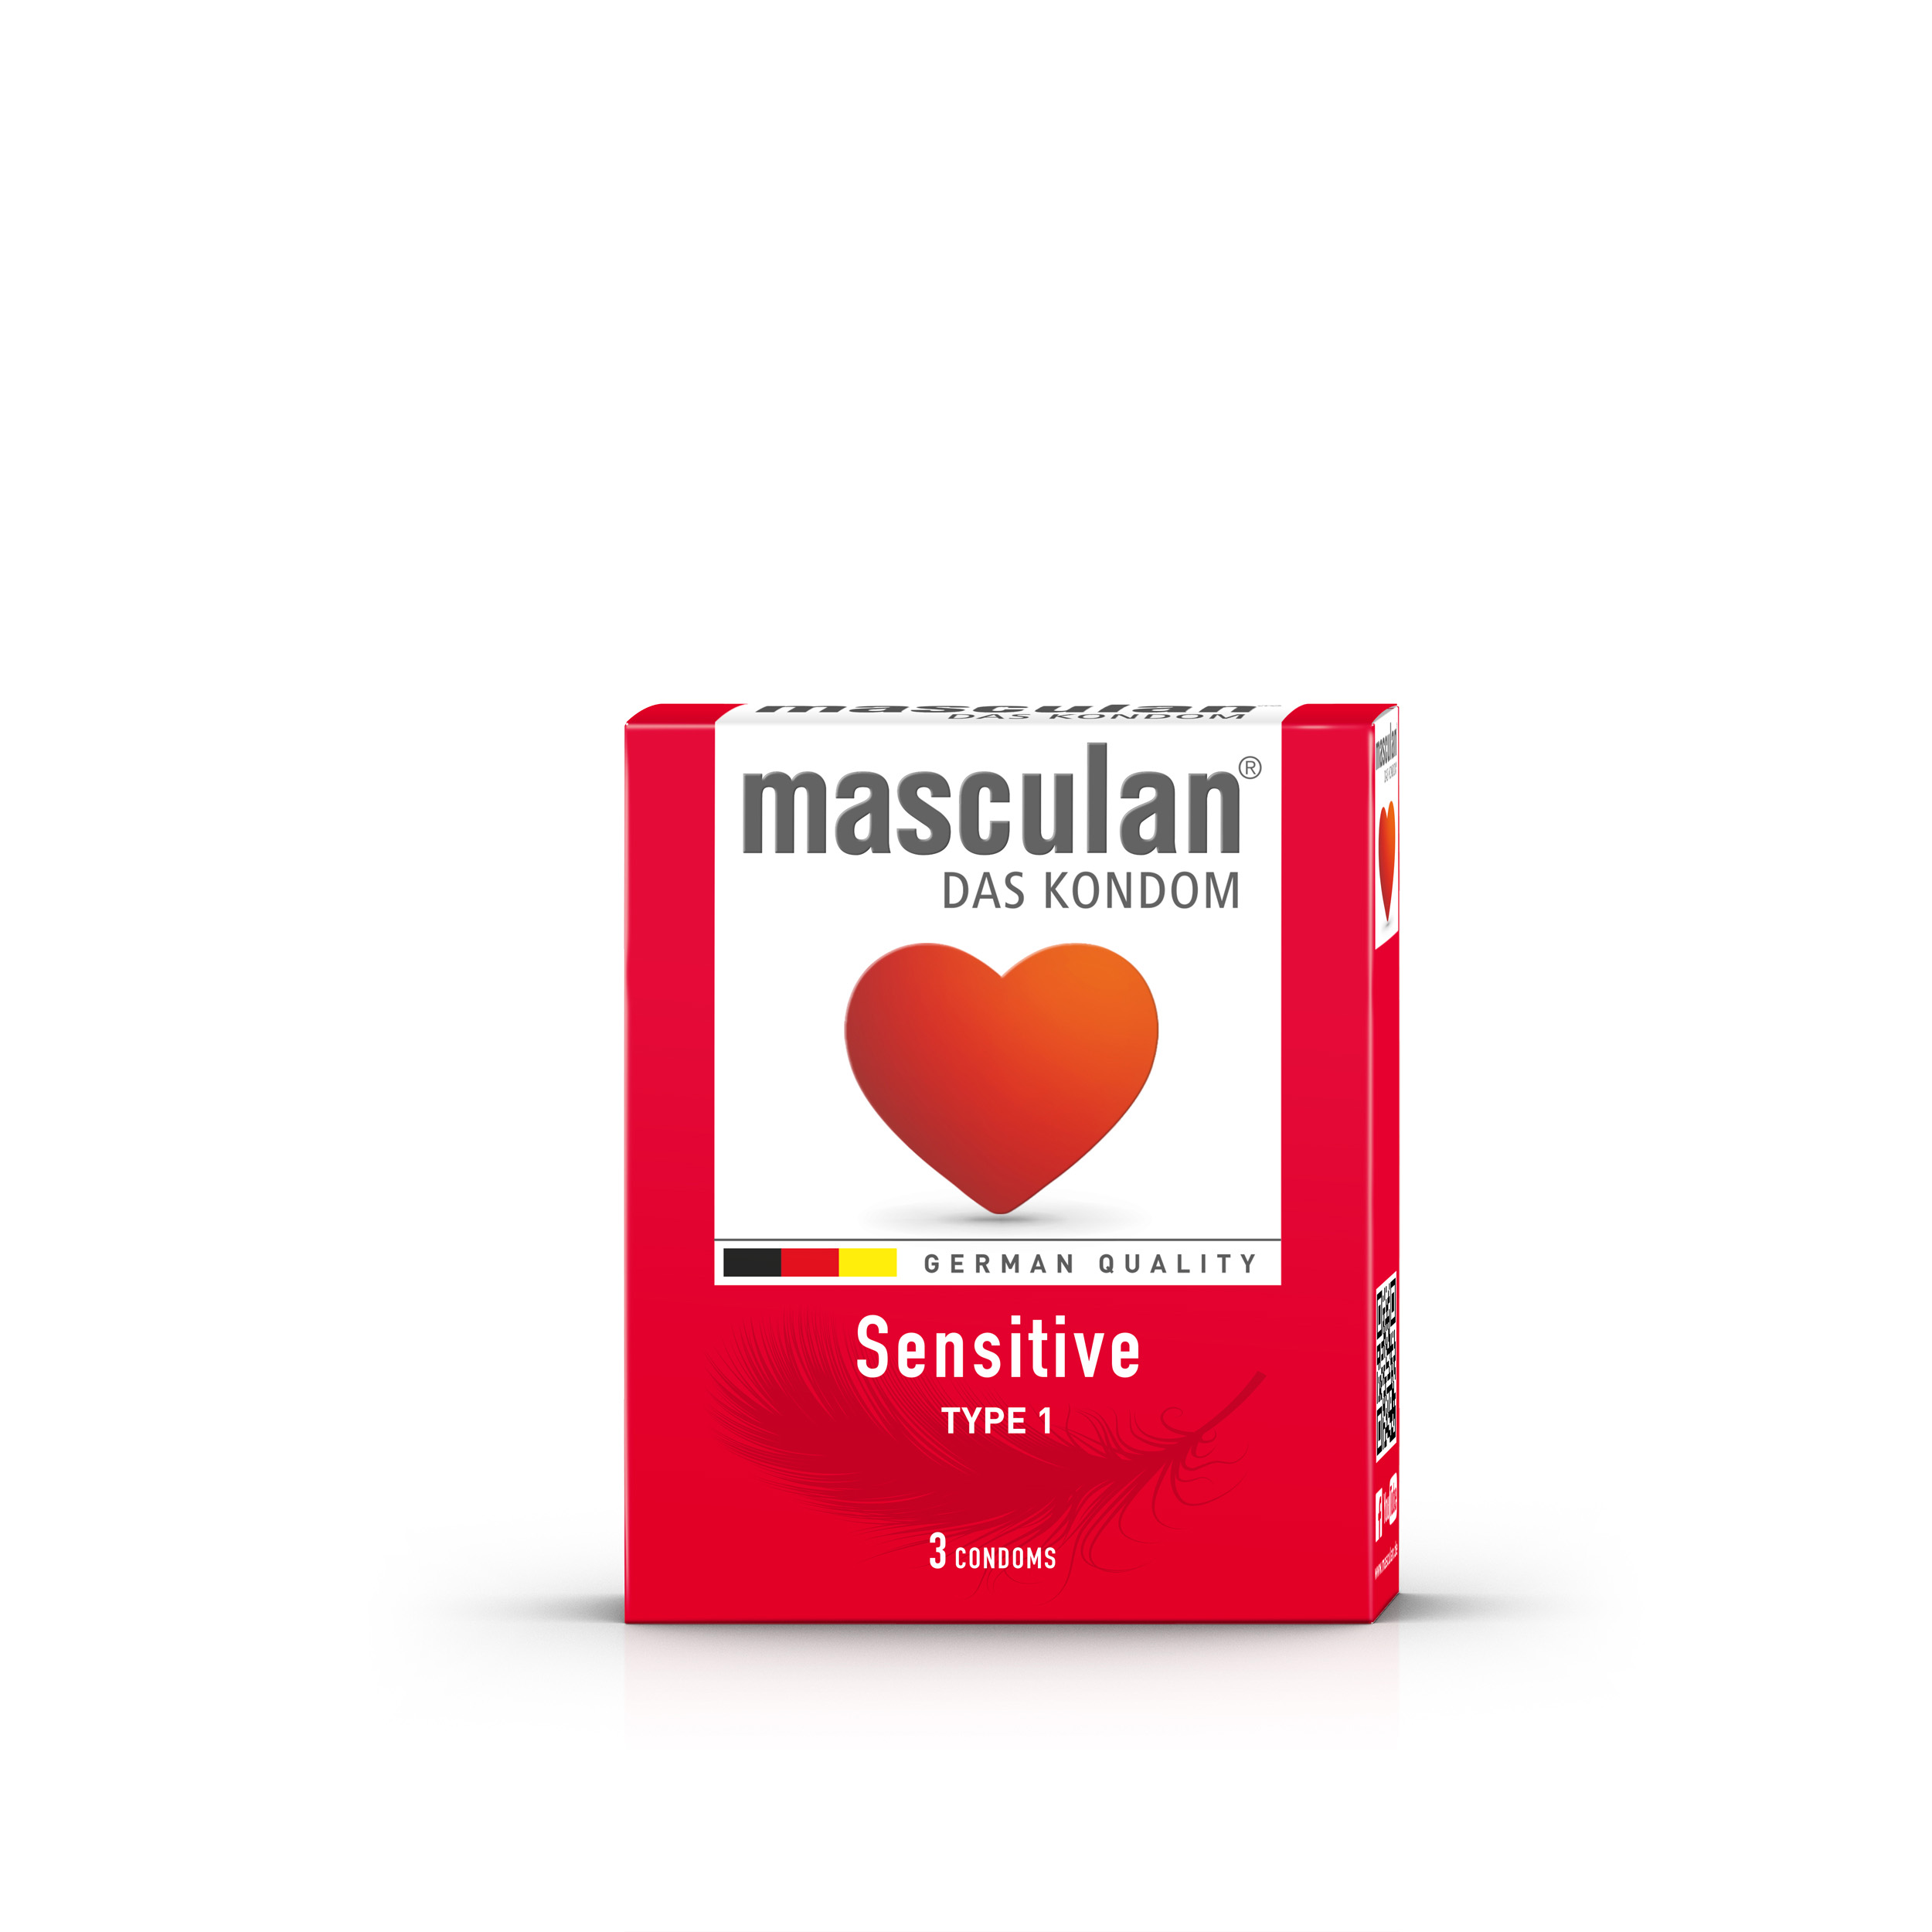 Masculan Sensitive 3 Pcs.